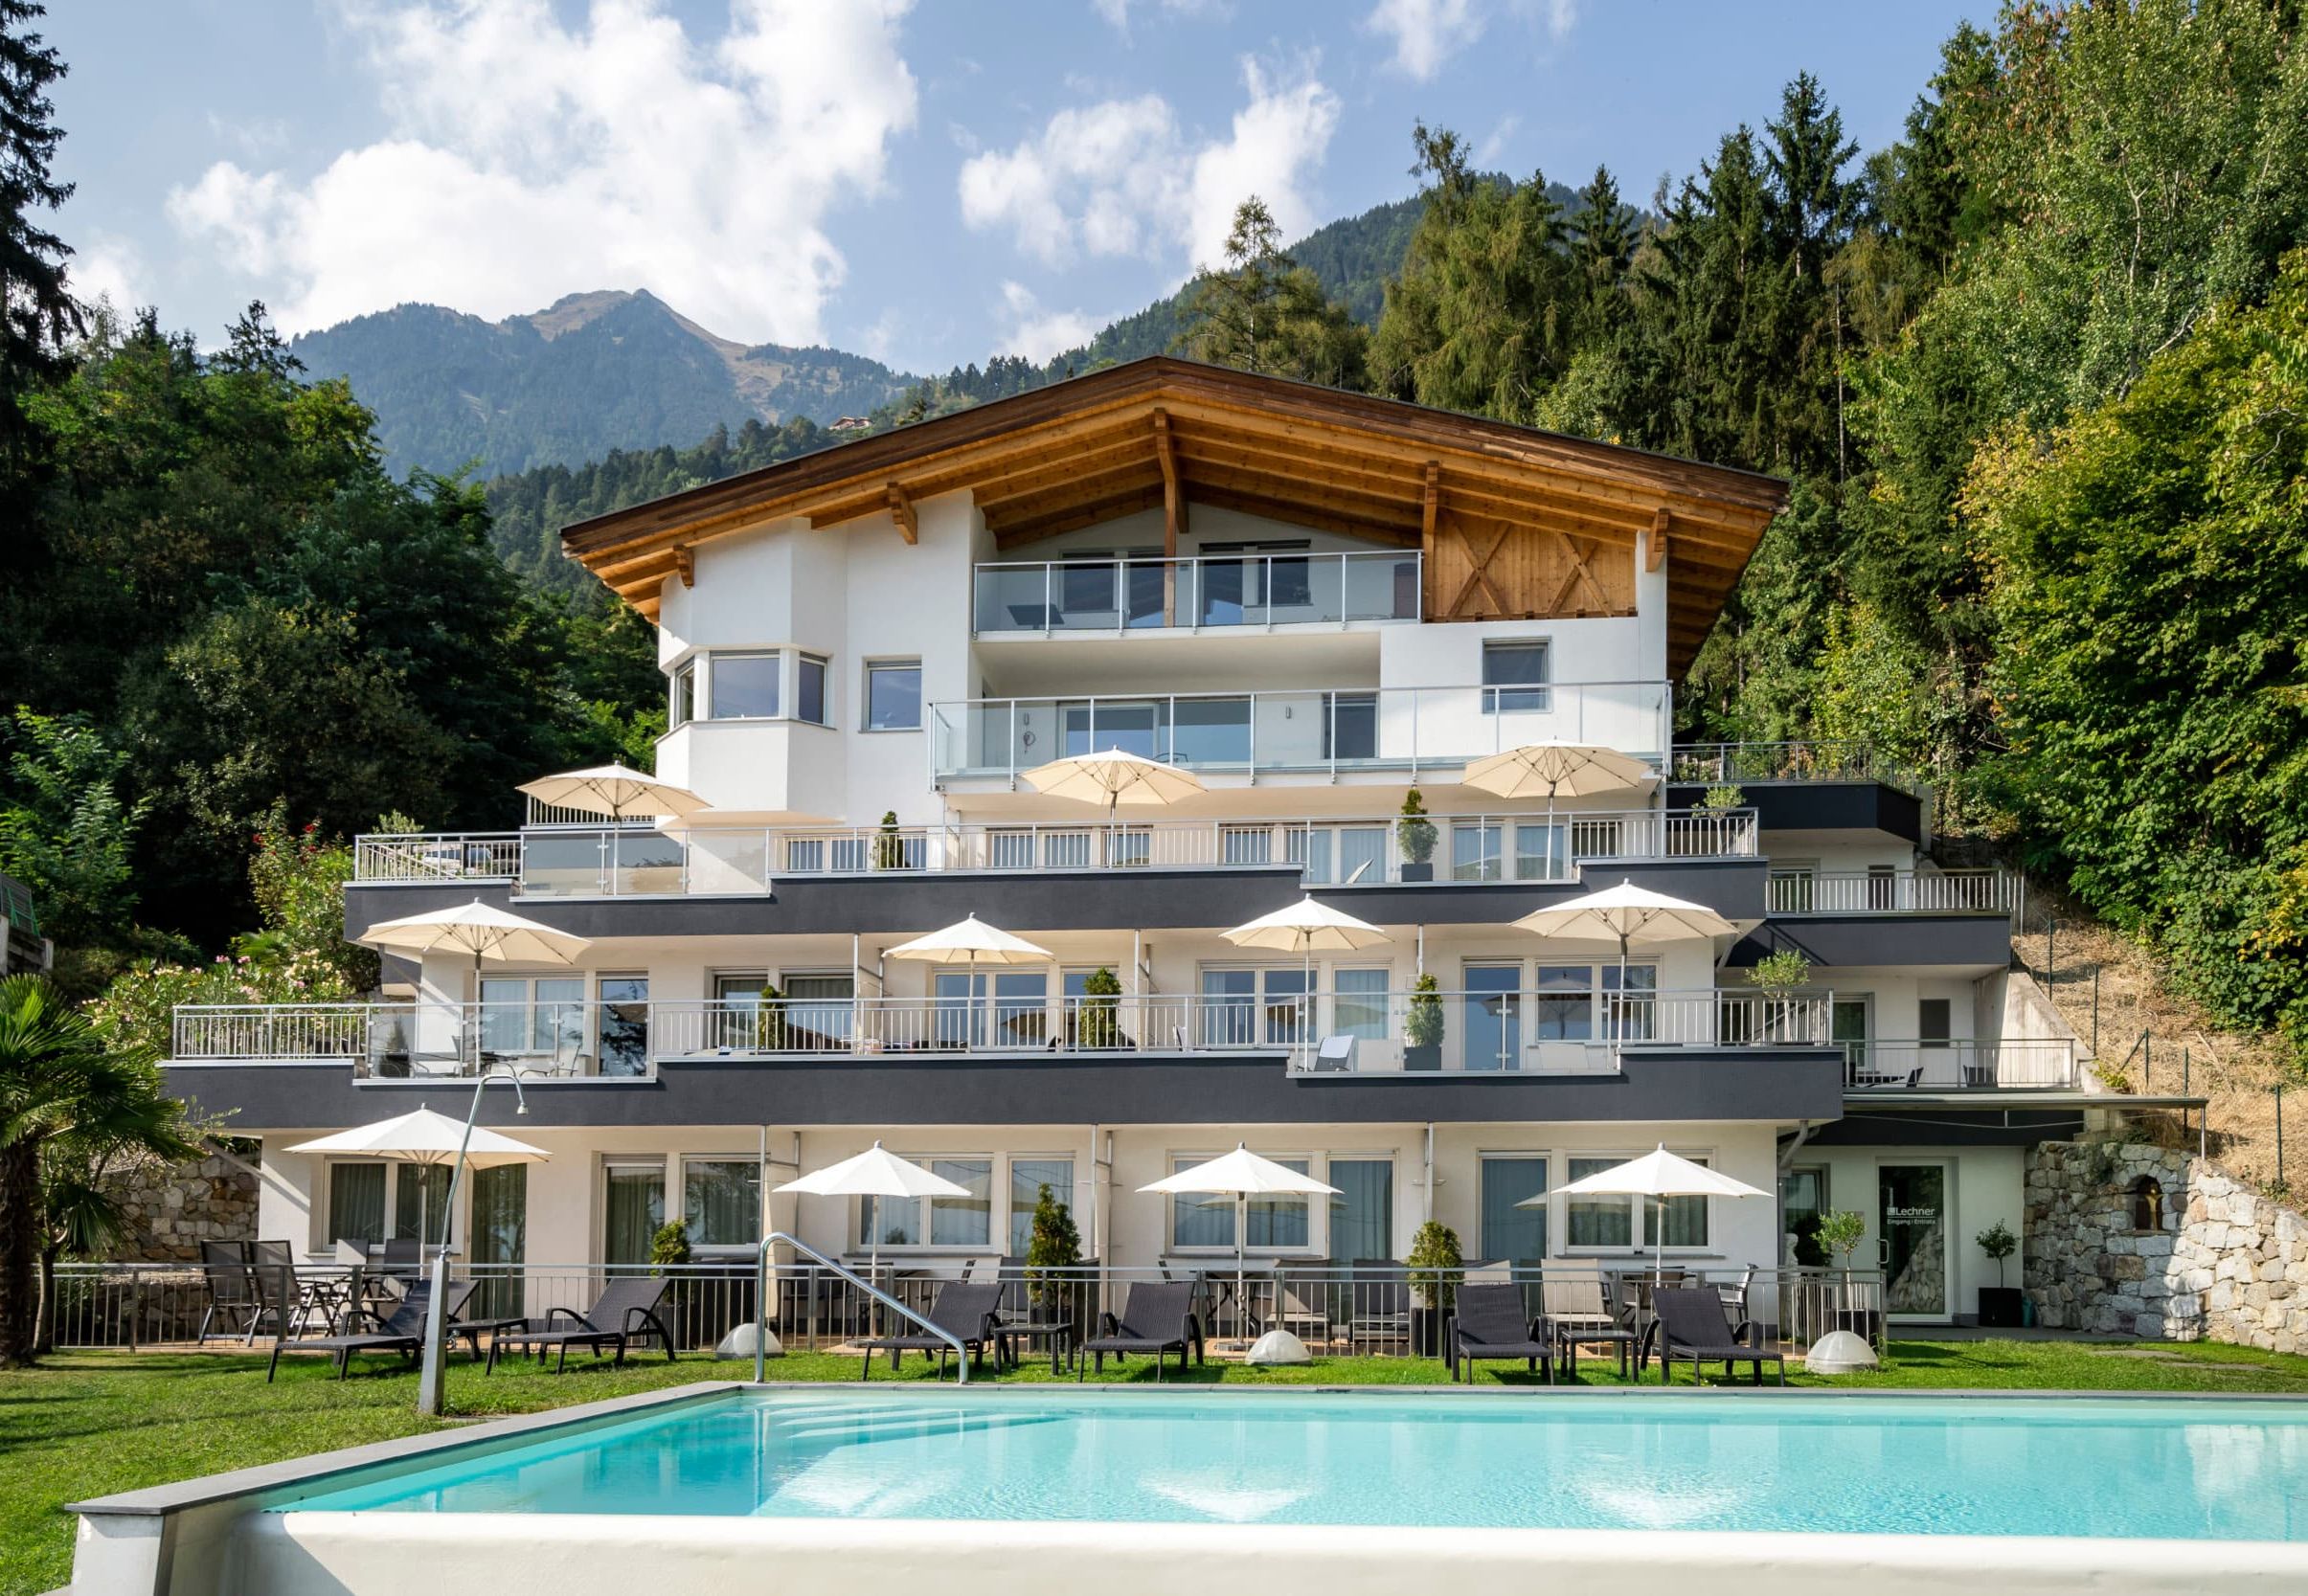 Residence Lechner outdoor pool Dorf Tirol South Tyrol dorf-tirol-Residence-lechner-schwimmbad-ferienwohnungen.jpg